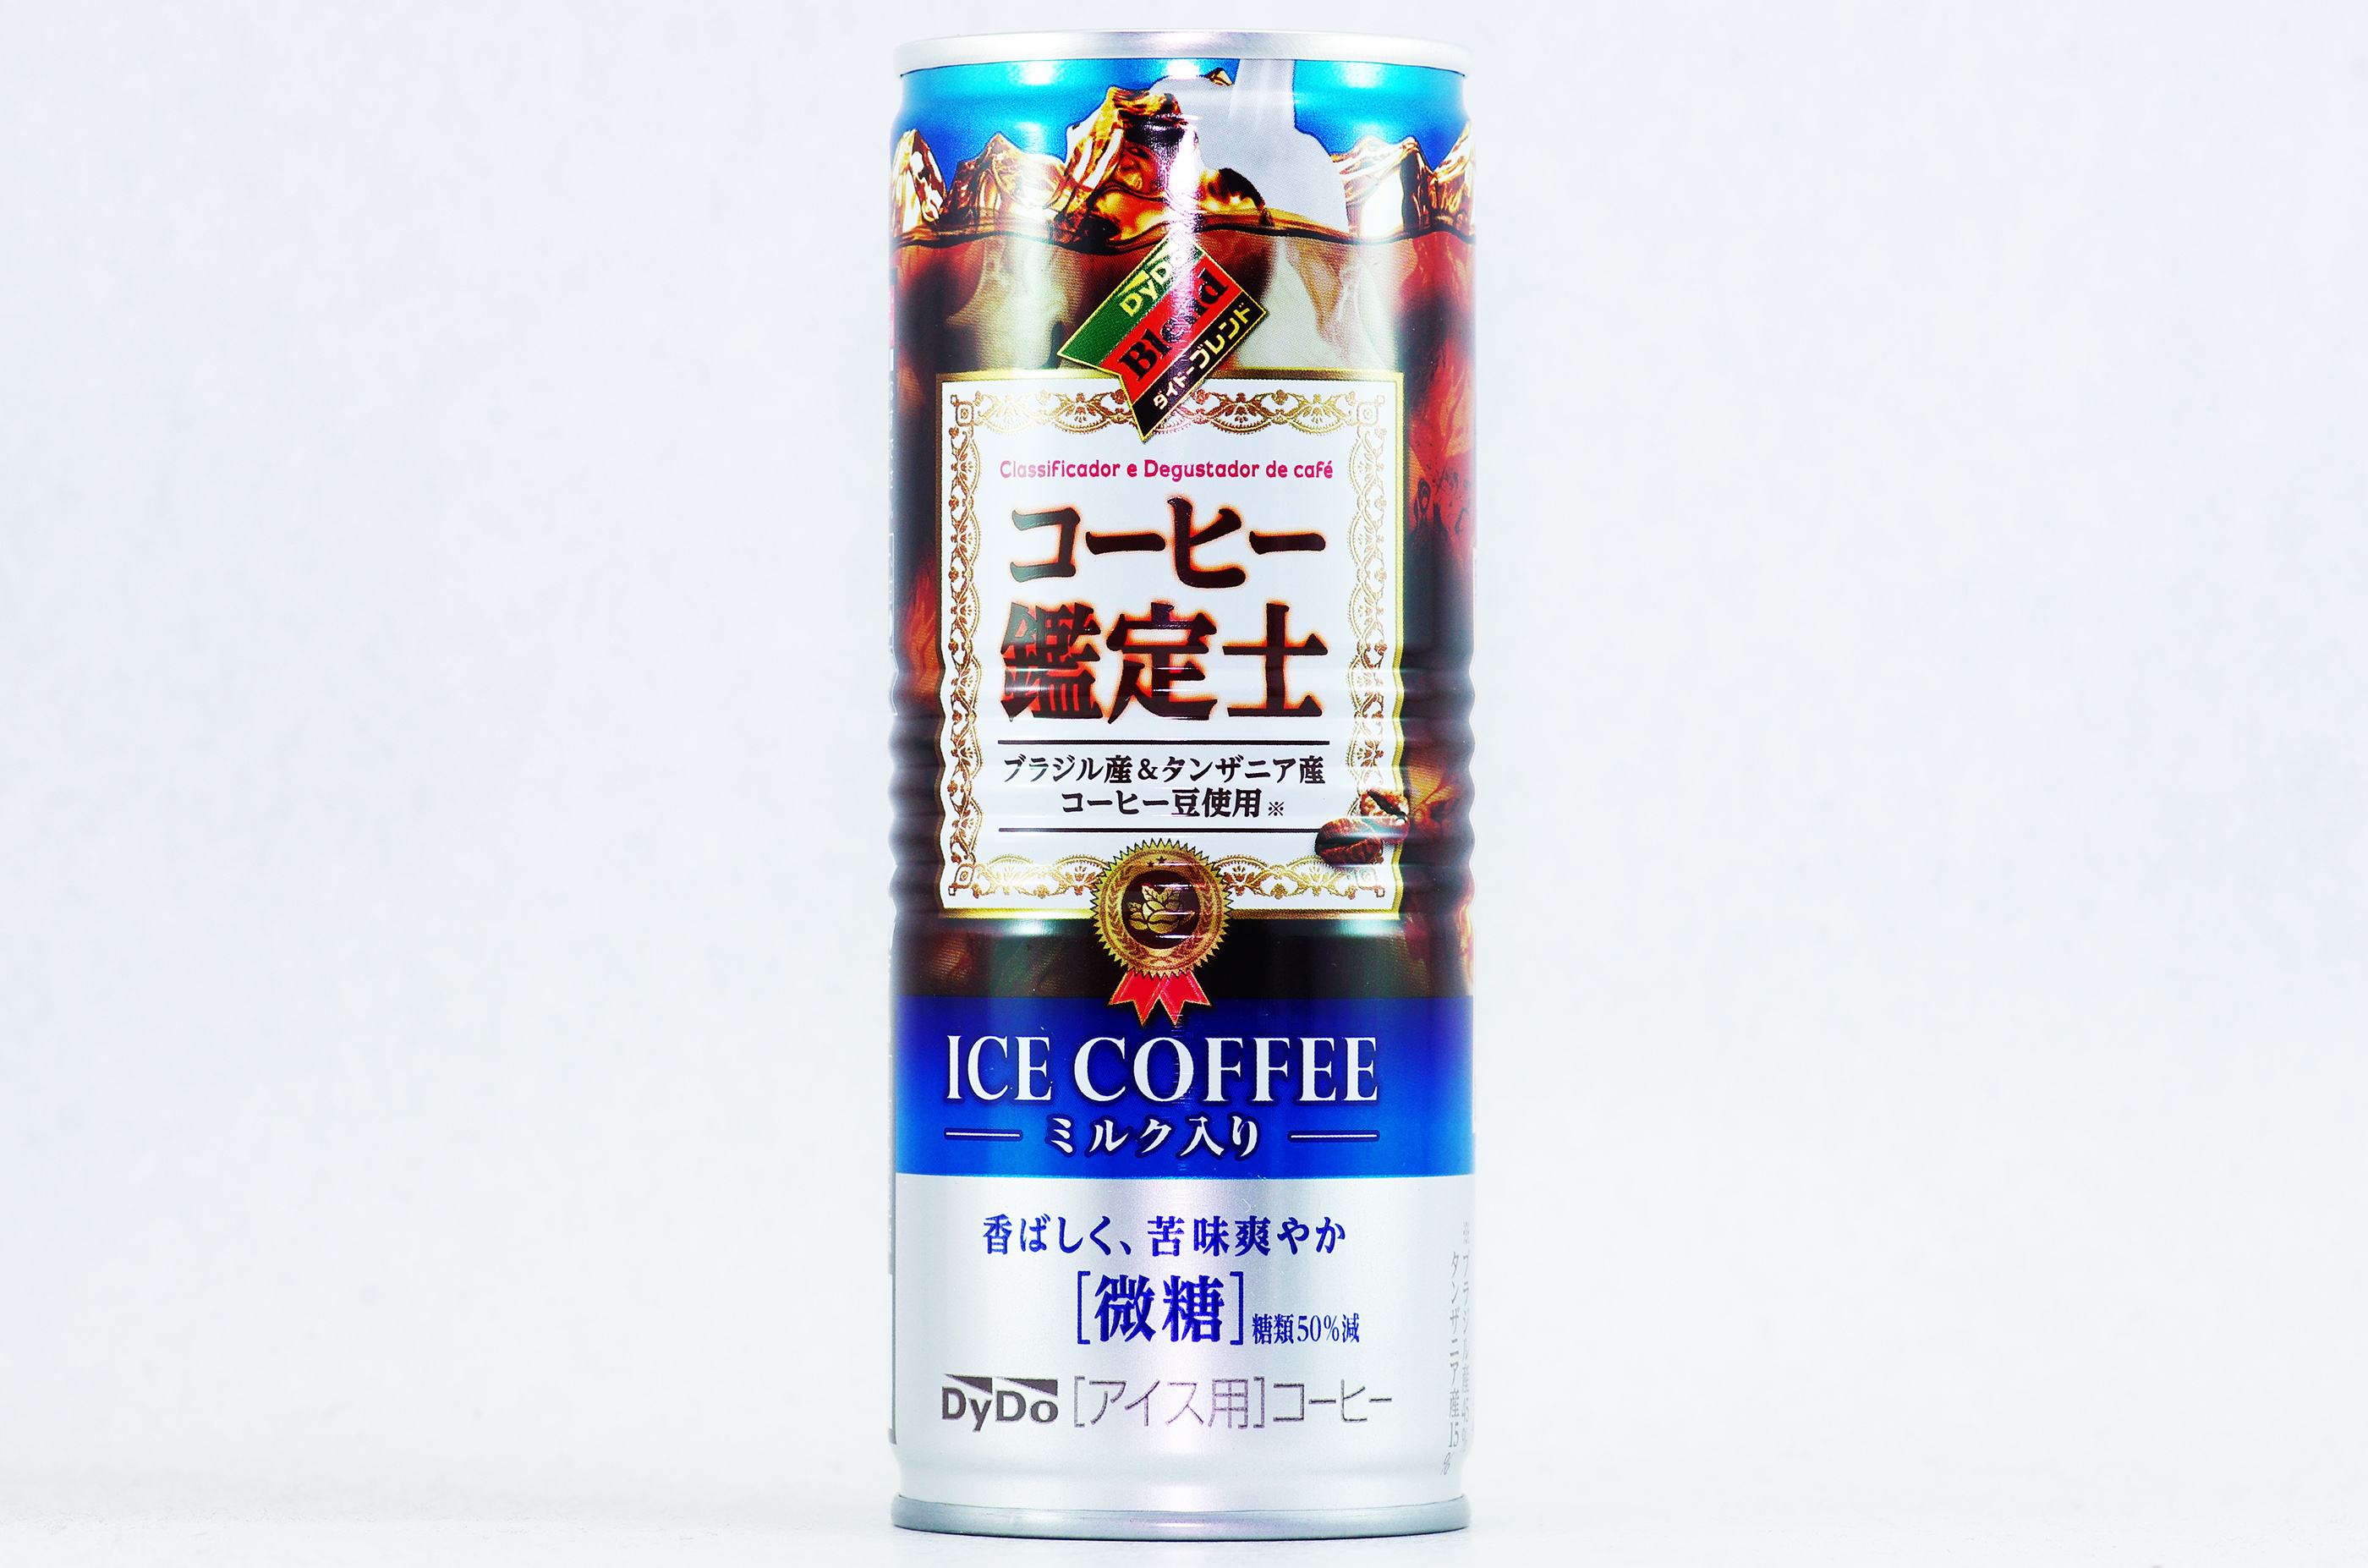 ダイドーブレンド コーヒー鑑定士アイスコーヒー 2019年3月